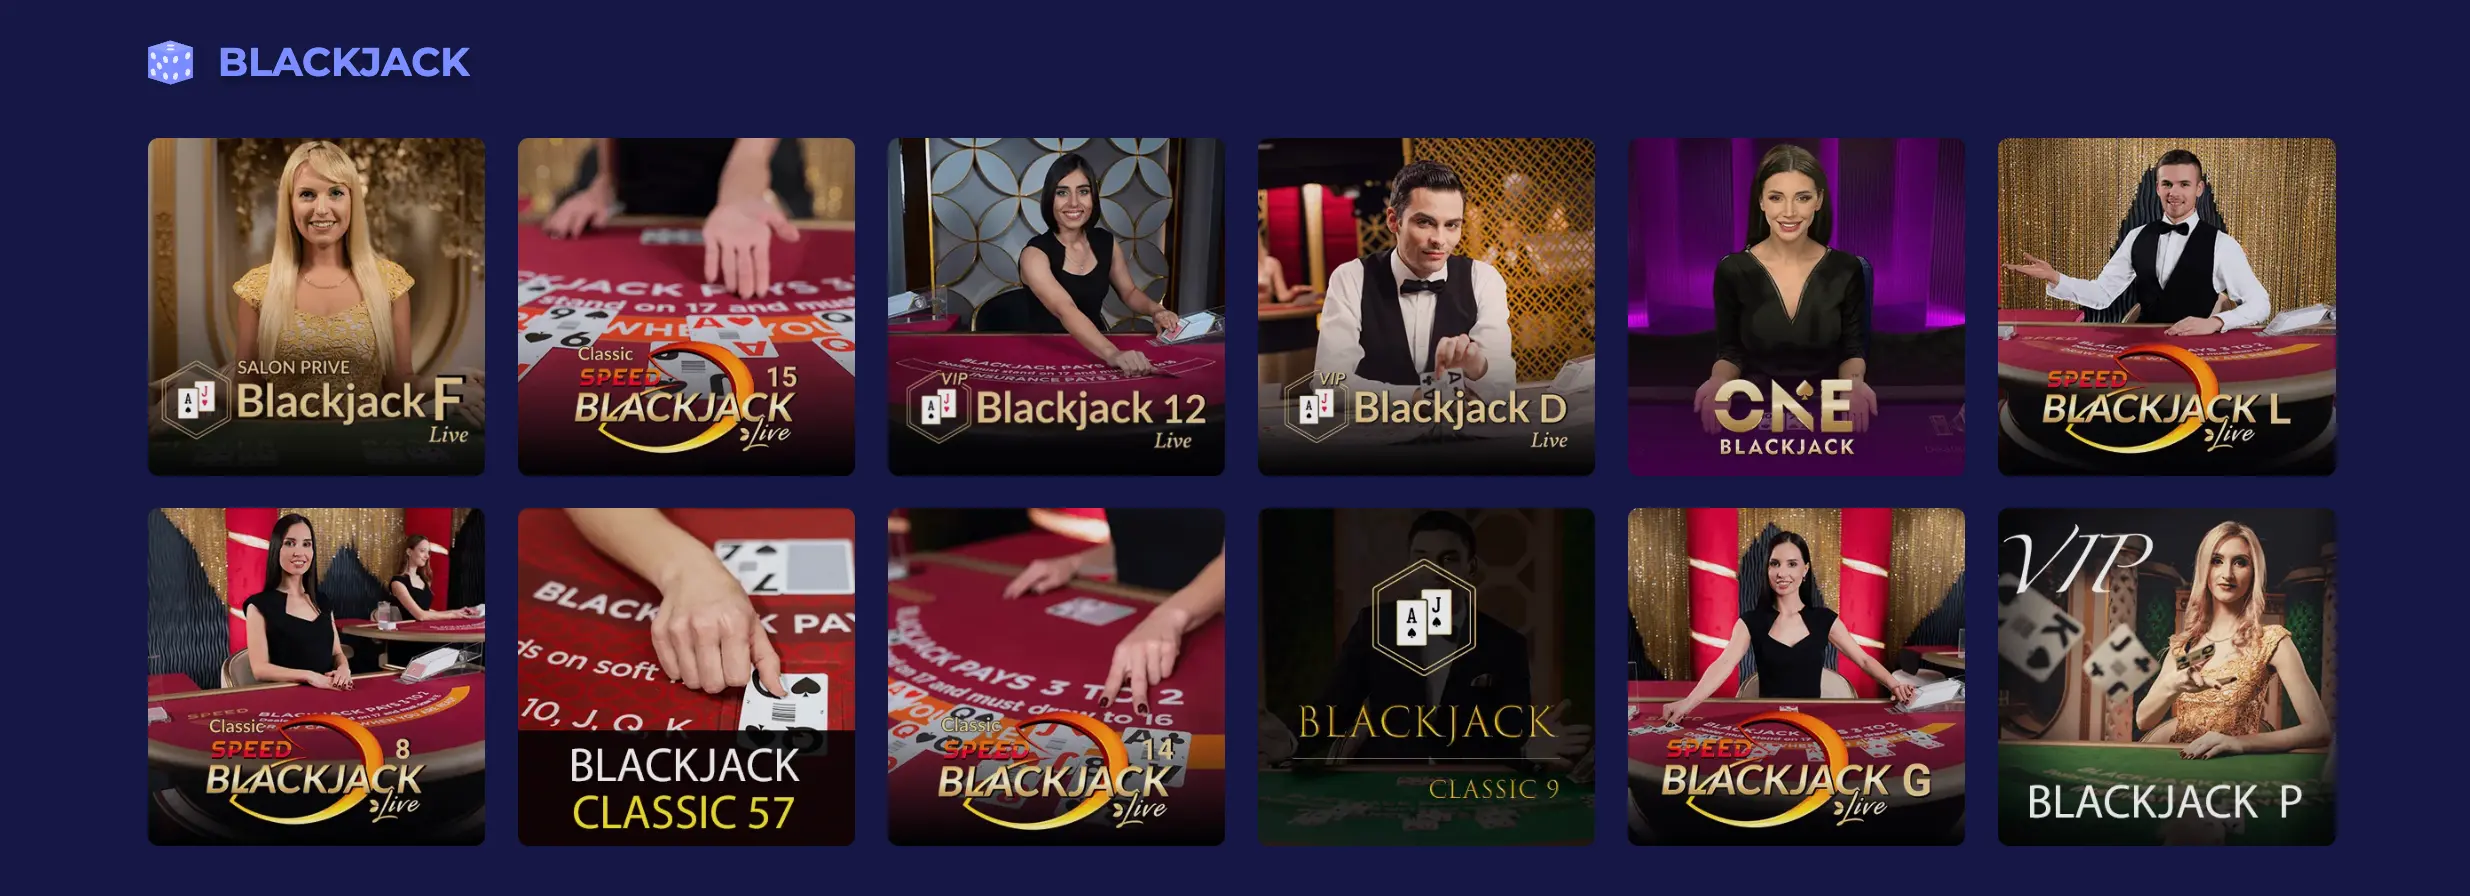 Blackjack im Pino Casino